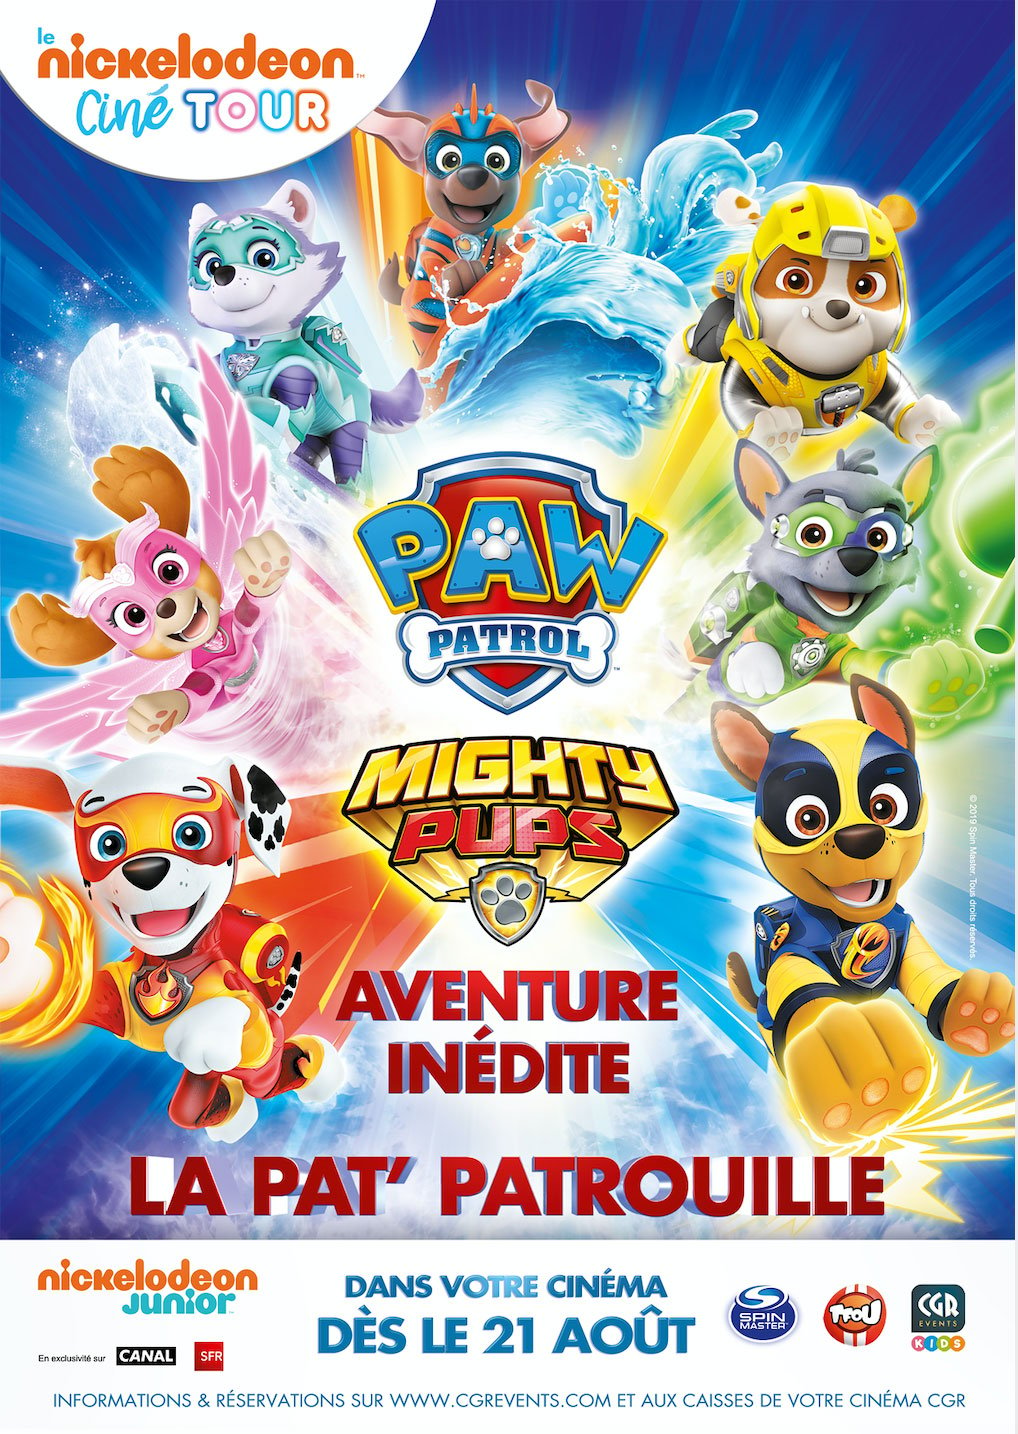 La Pat' patrouille 2 (the Mighty movie) - Activités et